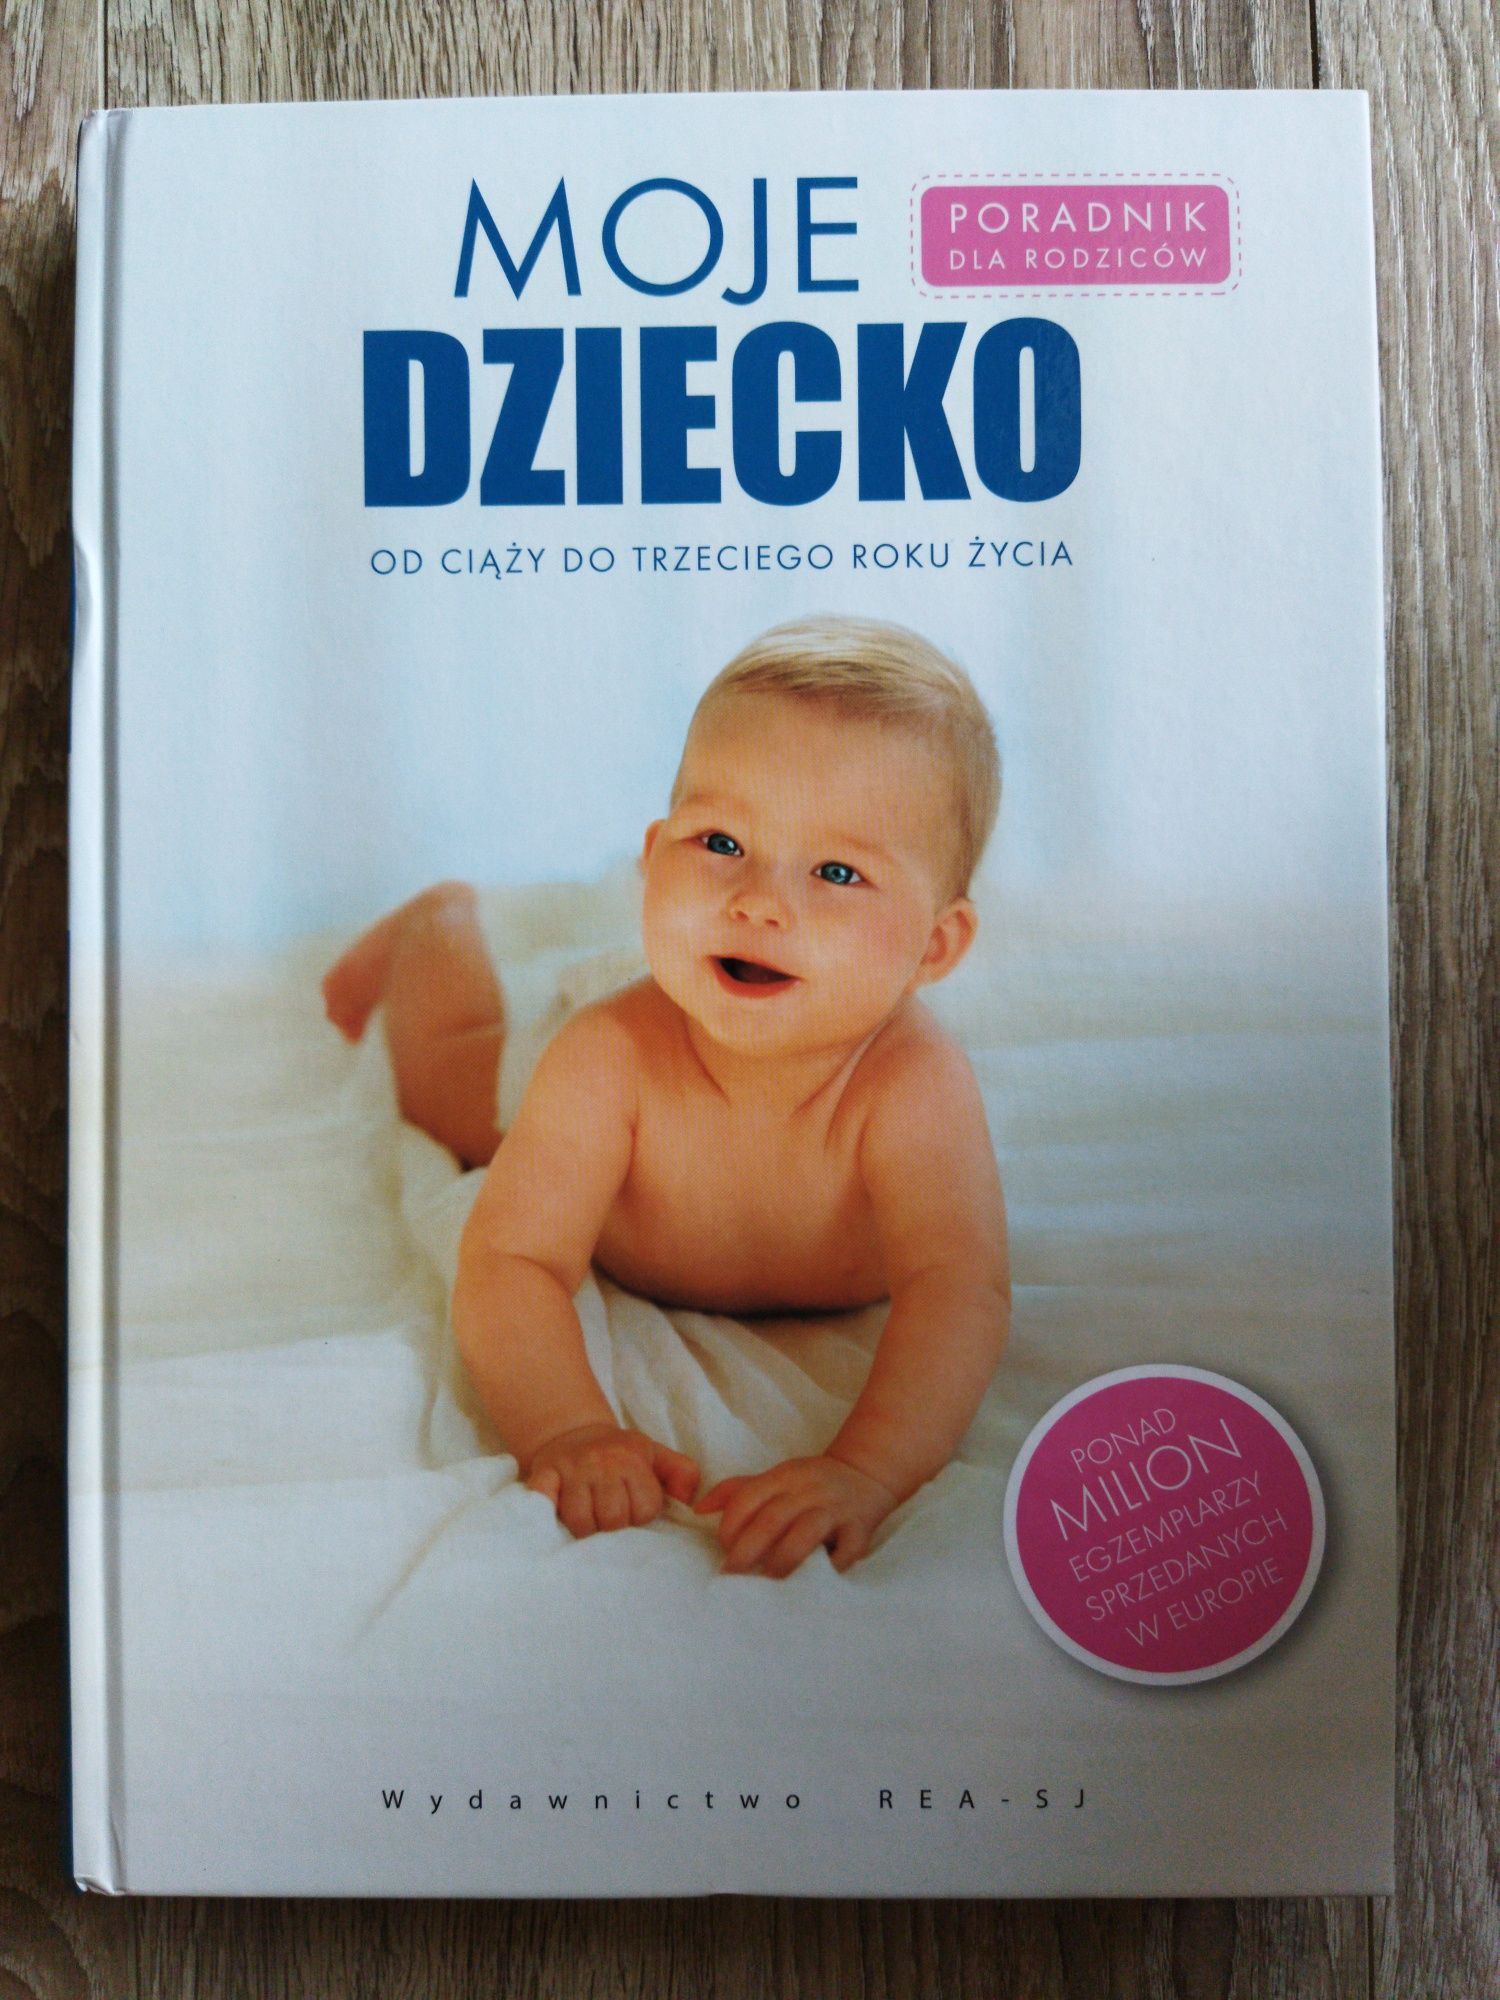 Nowa książka "Moje dziecko od ciąży do trzeciego roku życia"